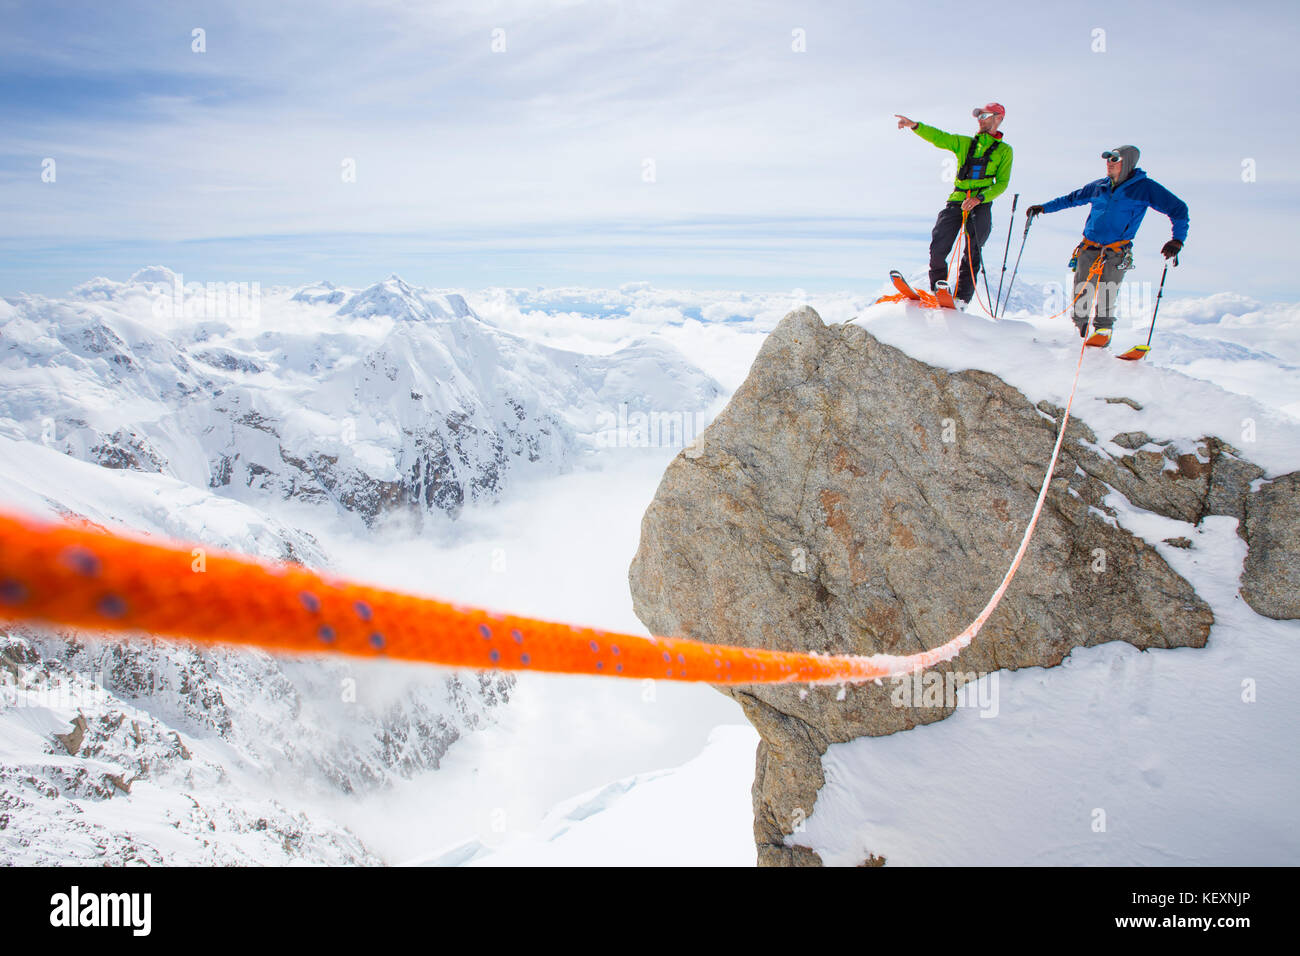 Zwei Skibergsteiger stehen auf einem Gipfel im Denali Nationalpark. Einer weist den Weg zu seinem Kumpel. Ein Sicherheitsseil verbindet das Duo. Denali, mit seinen vielen Gletschern und viel Schnee fallen im Sommer ist ein perfekter Berg für Backcountry Skitouren, Alpinismus und Freeriden. Stockfoto